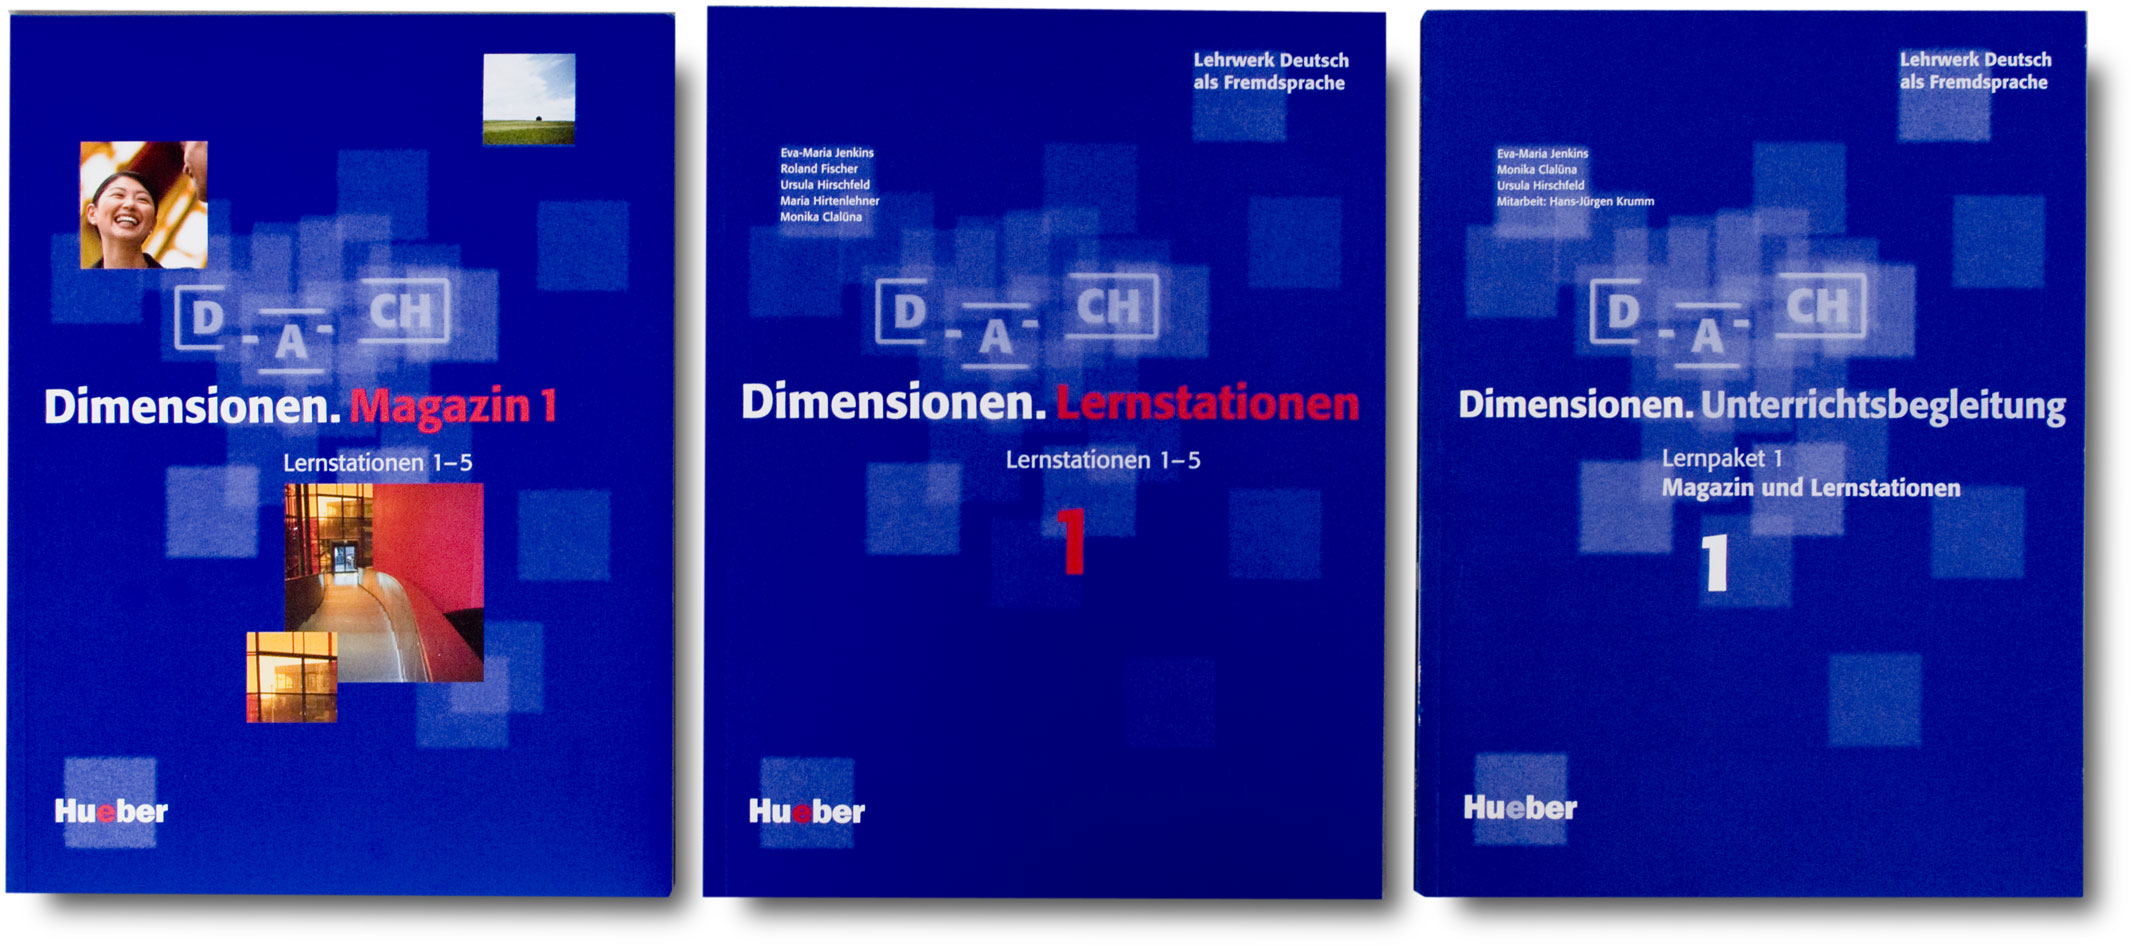 Didaktische Buchgestaltung, Buchumschläge Lernstationen, Magazin und Unterrichtsbegleitung, Lehrwerk Dimensionen, Hueber Verlag München